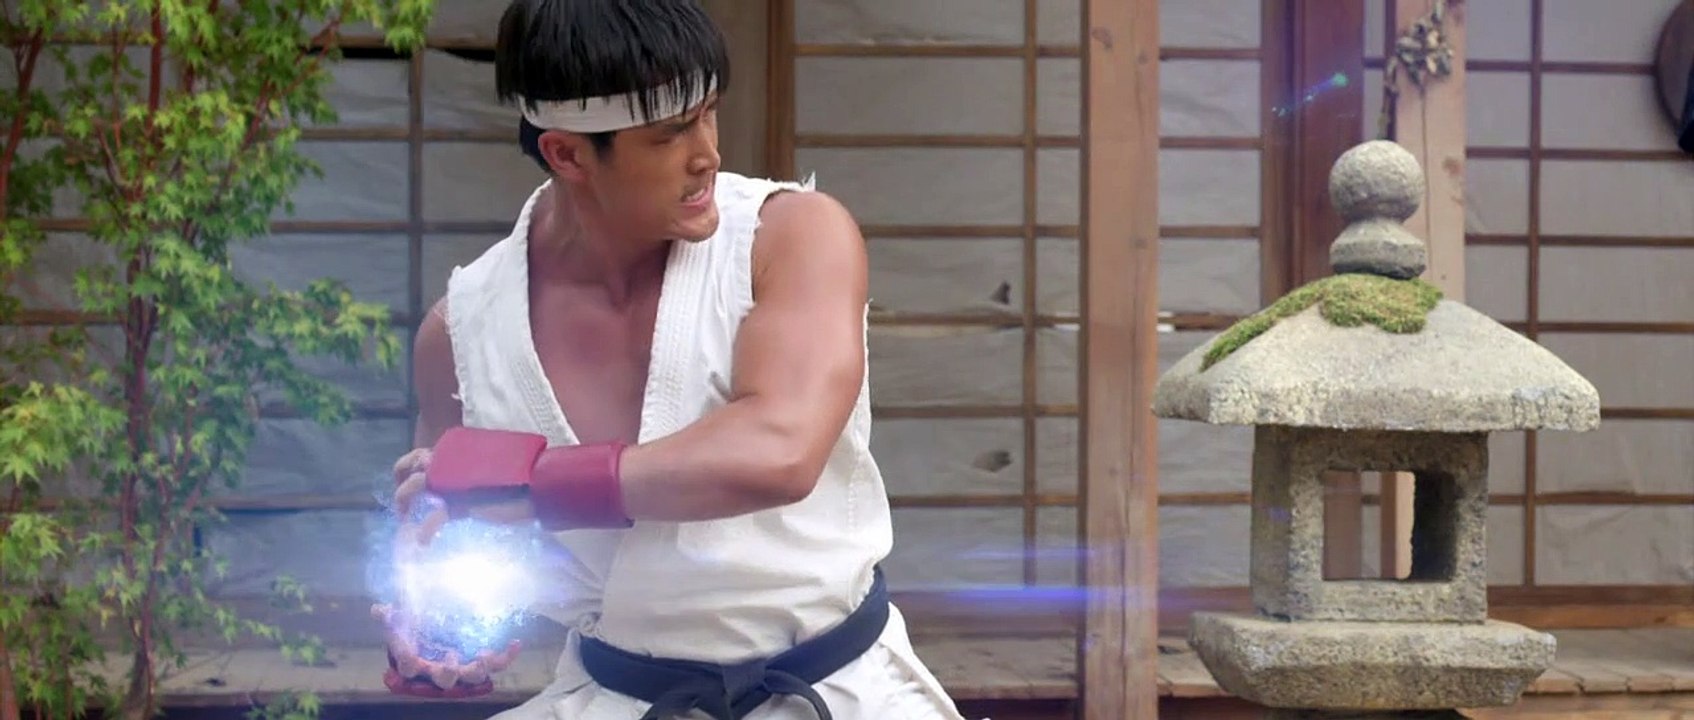 Street Fighter: Punho Assassino - Filme Completo Dublado - Street Fighter:  Assassin's Fist - Joey Ansah - Vídeo Dailymotion